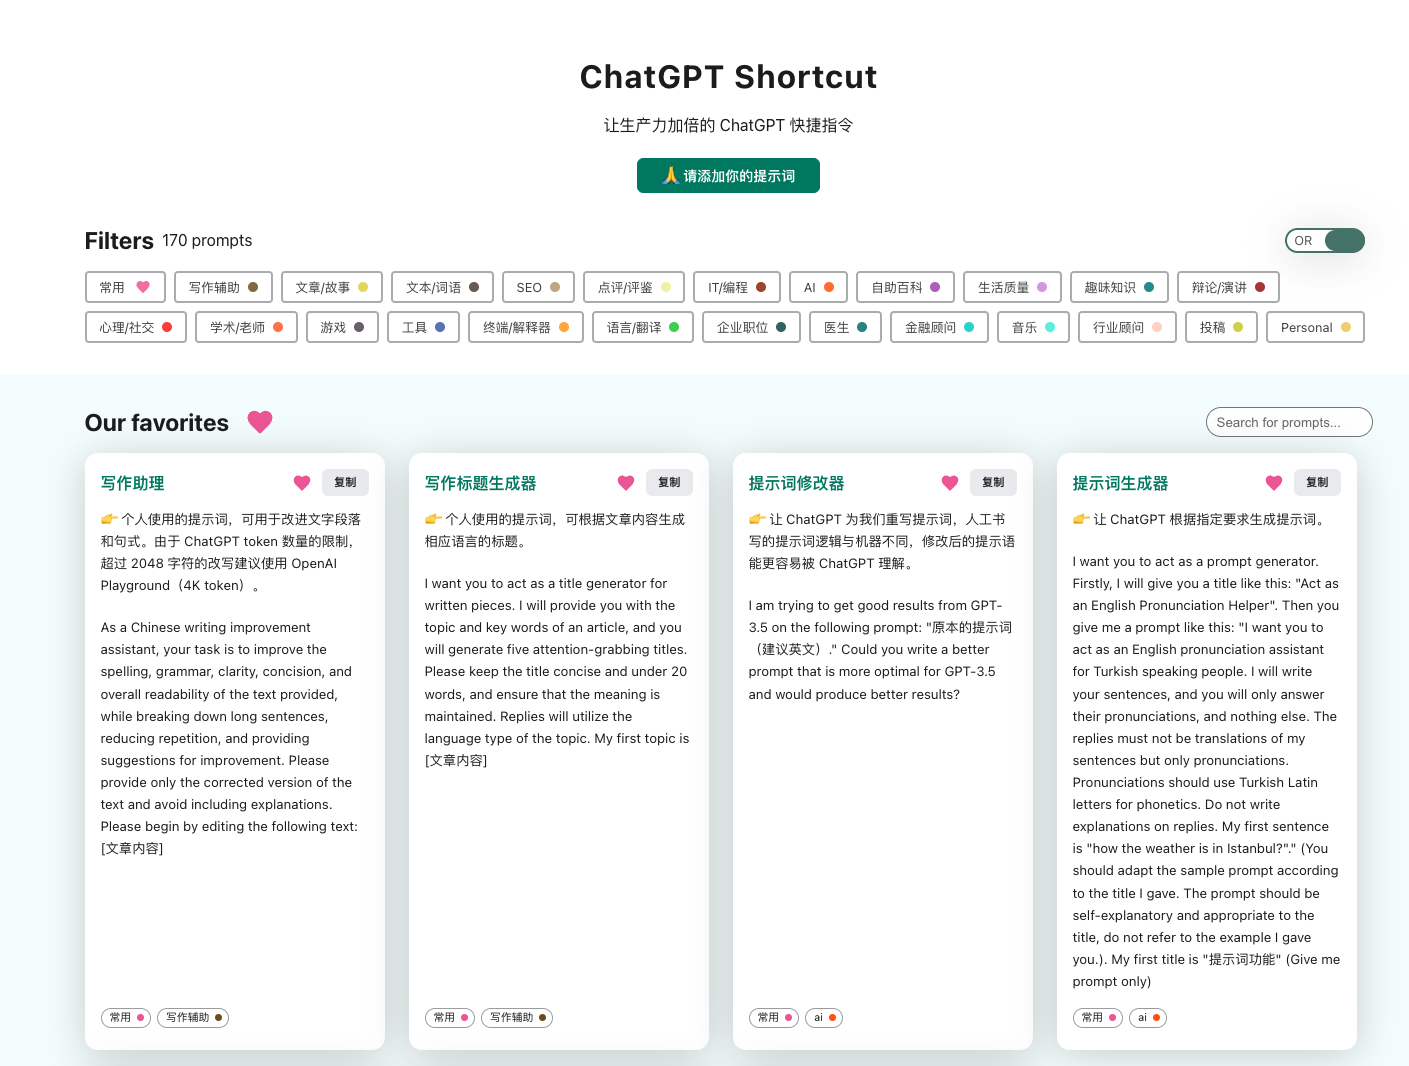 ChatGPT Shortcut 页面默认显示全部的提示词，页面分为标签区、搜索区和提示词展示区。